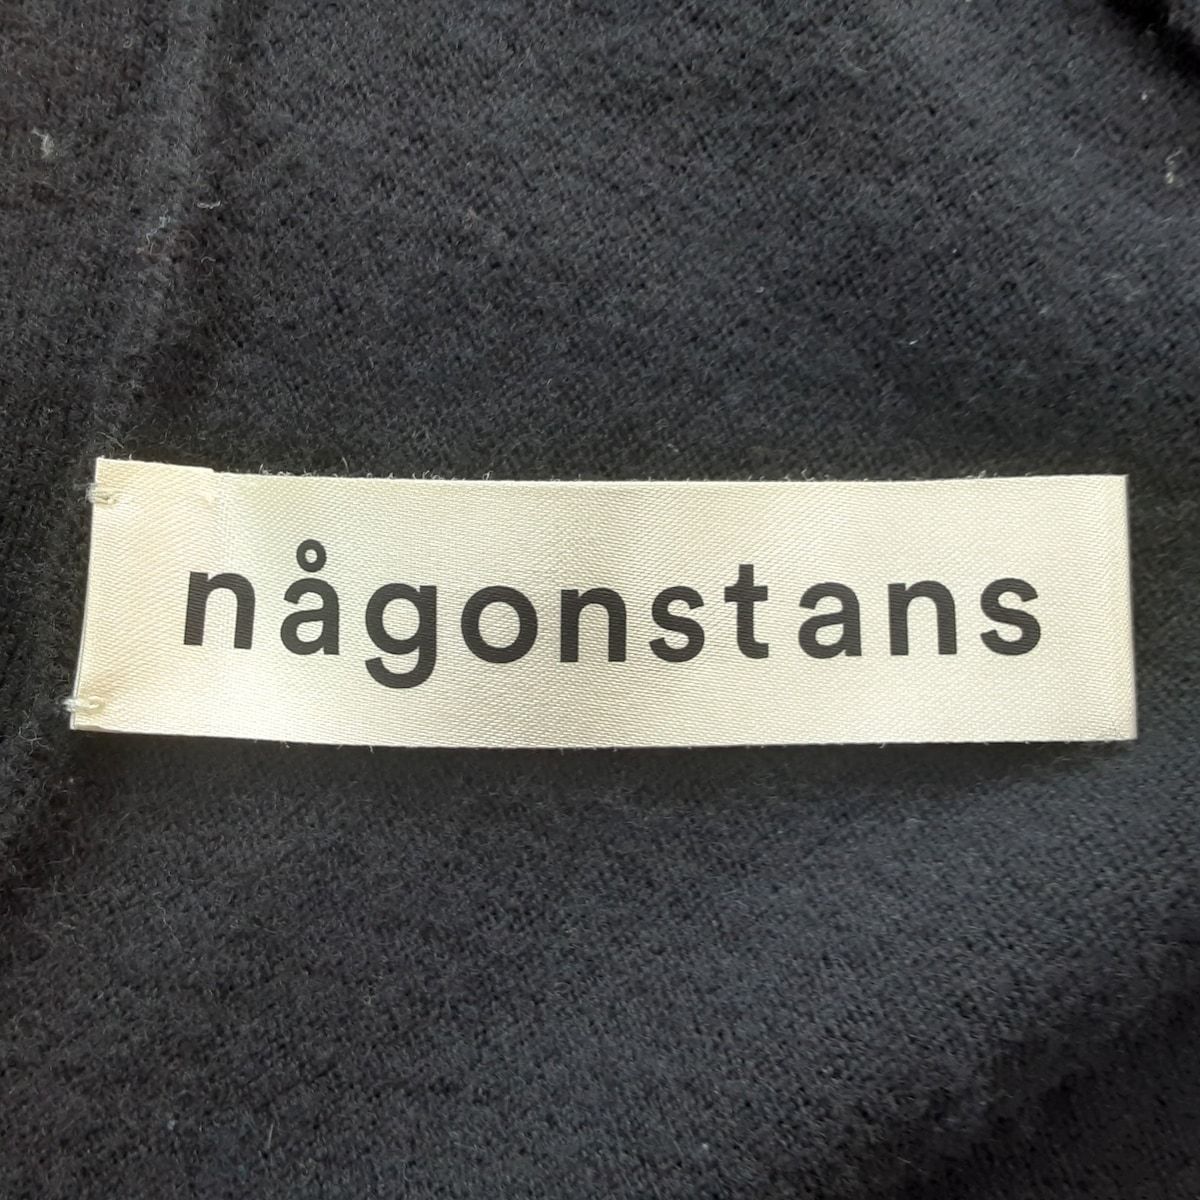 【定番】ナゴンスタンス nagonstans サイズ36 S - ライトブラウン×イエロー レディース 春・秋物/ナイロンコート 美品 コート Sサイズ